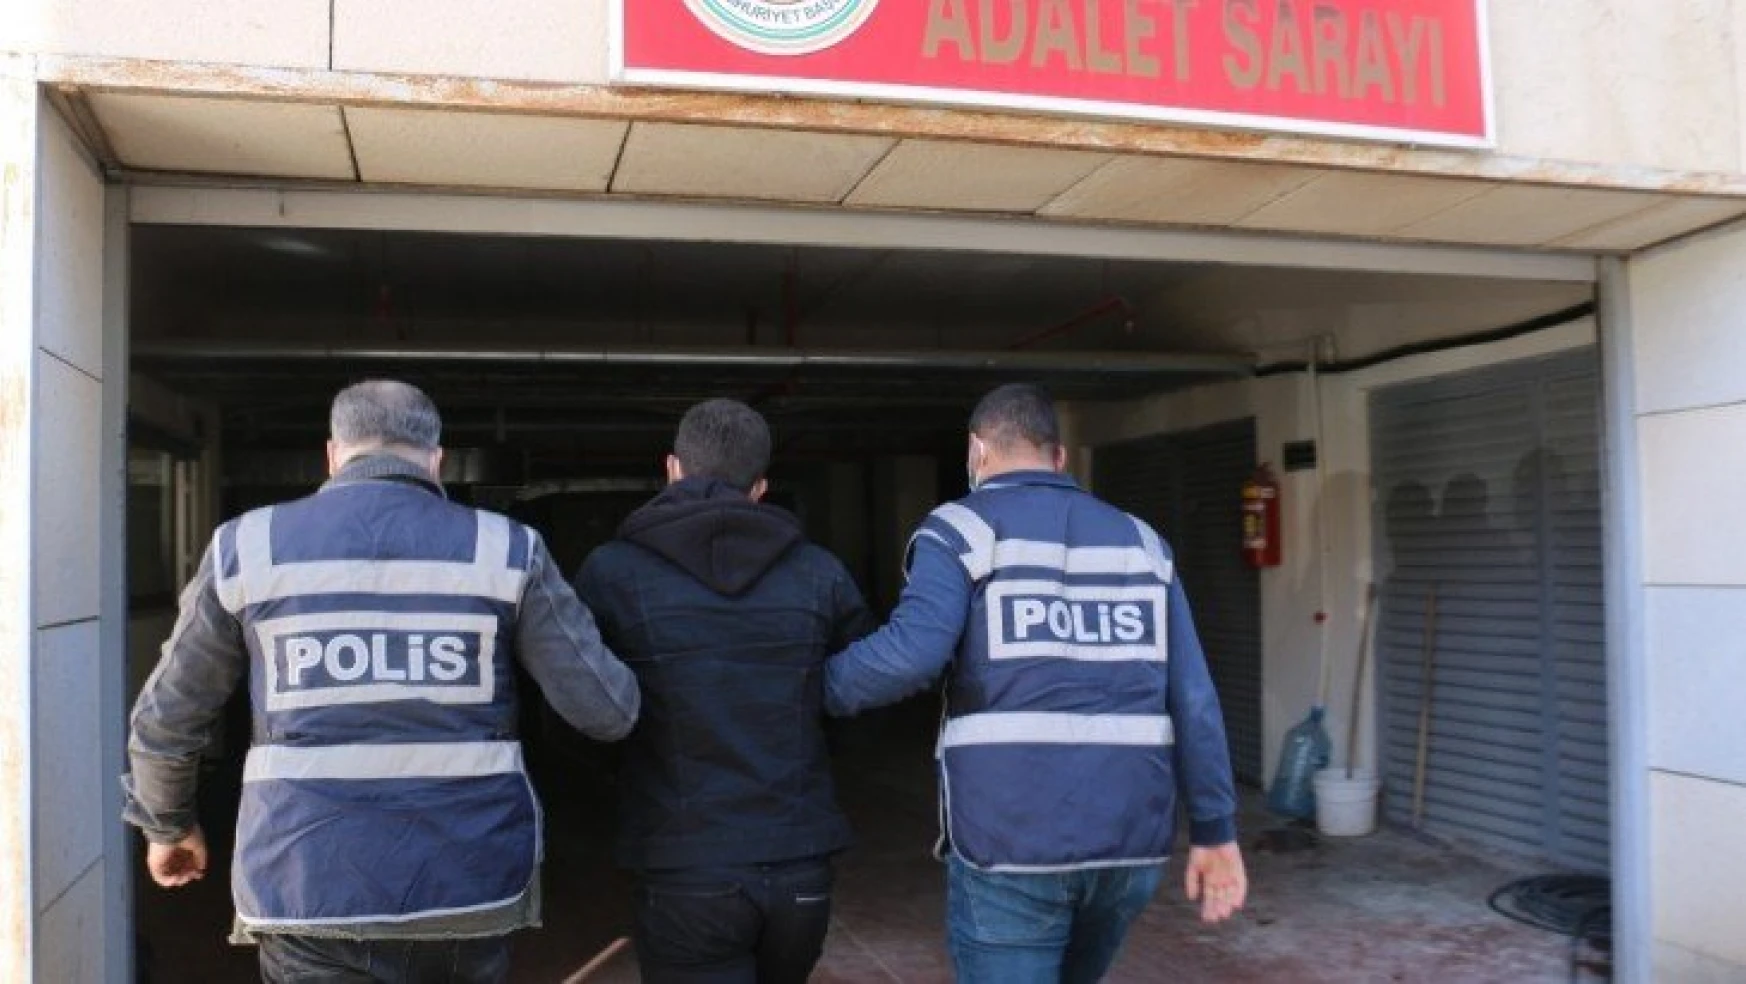 Elazığ'da bir şahsı bıçakla ağır yaralayan şüpheli tutuklandı